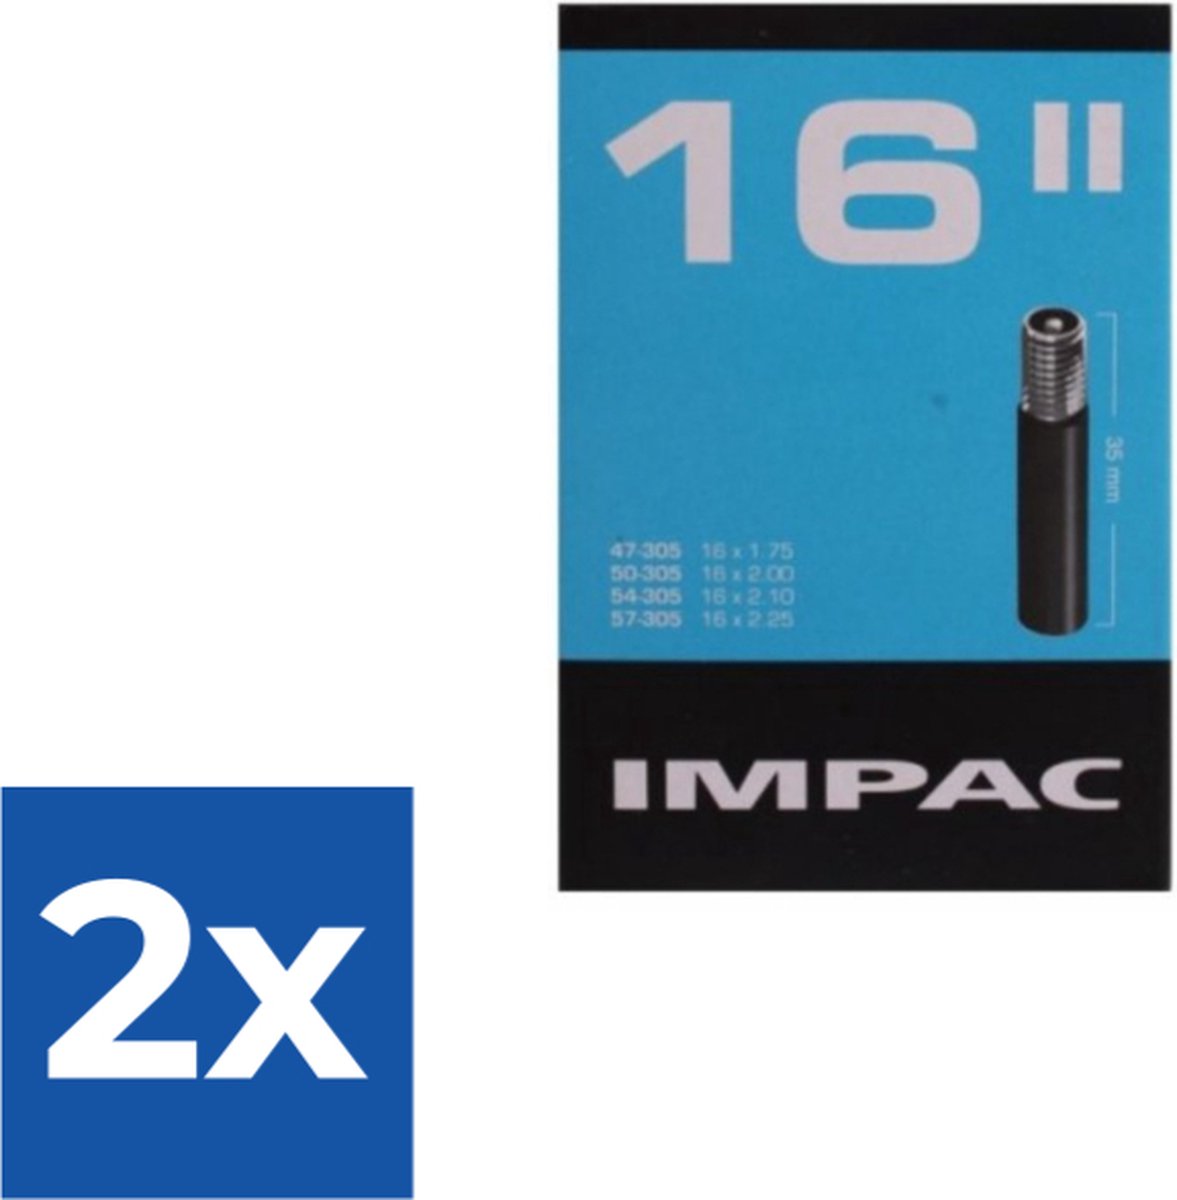 Impac Binnenband 16 X 1.75/2.125 (47/57-305) Av 35mm - Voordeelverpakking 2 stuks